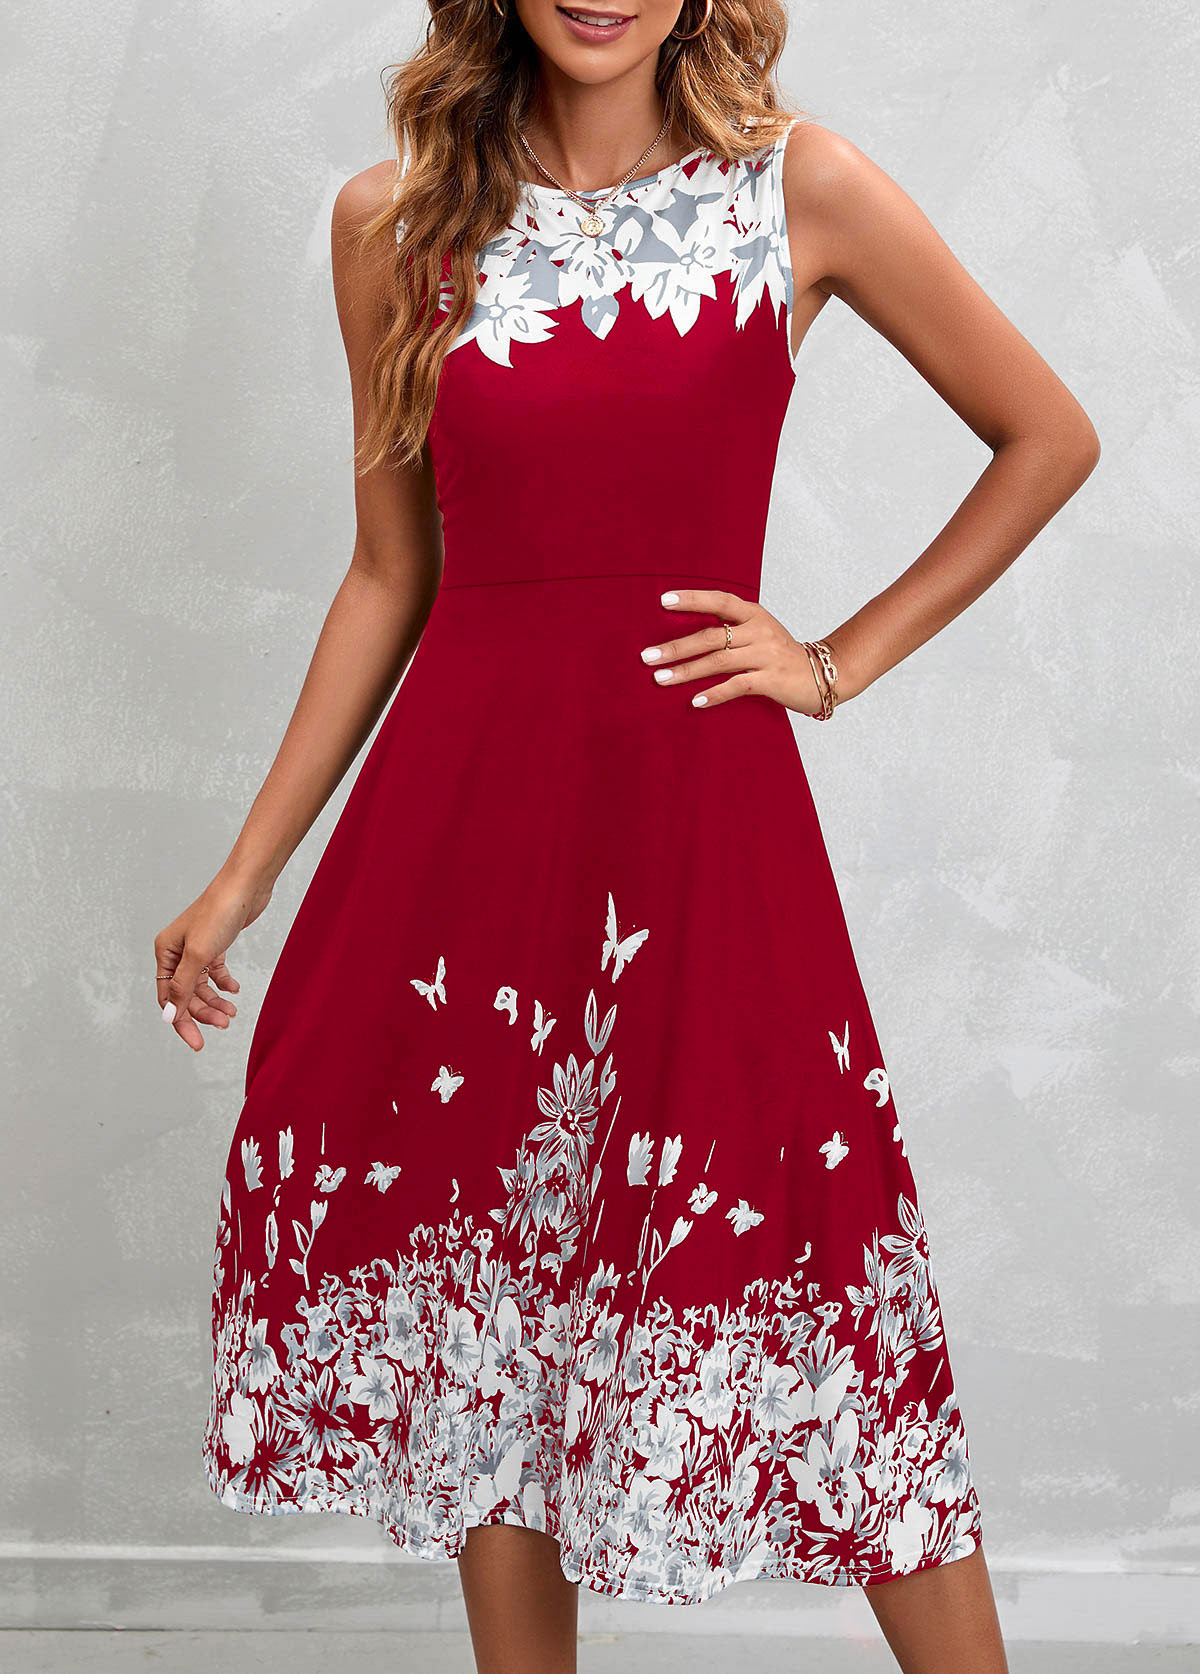 Floral Print Wine Red Sleeveless High Waist Dress